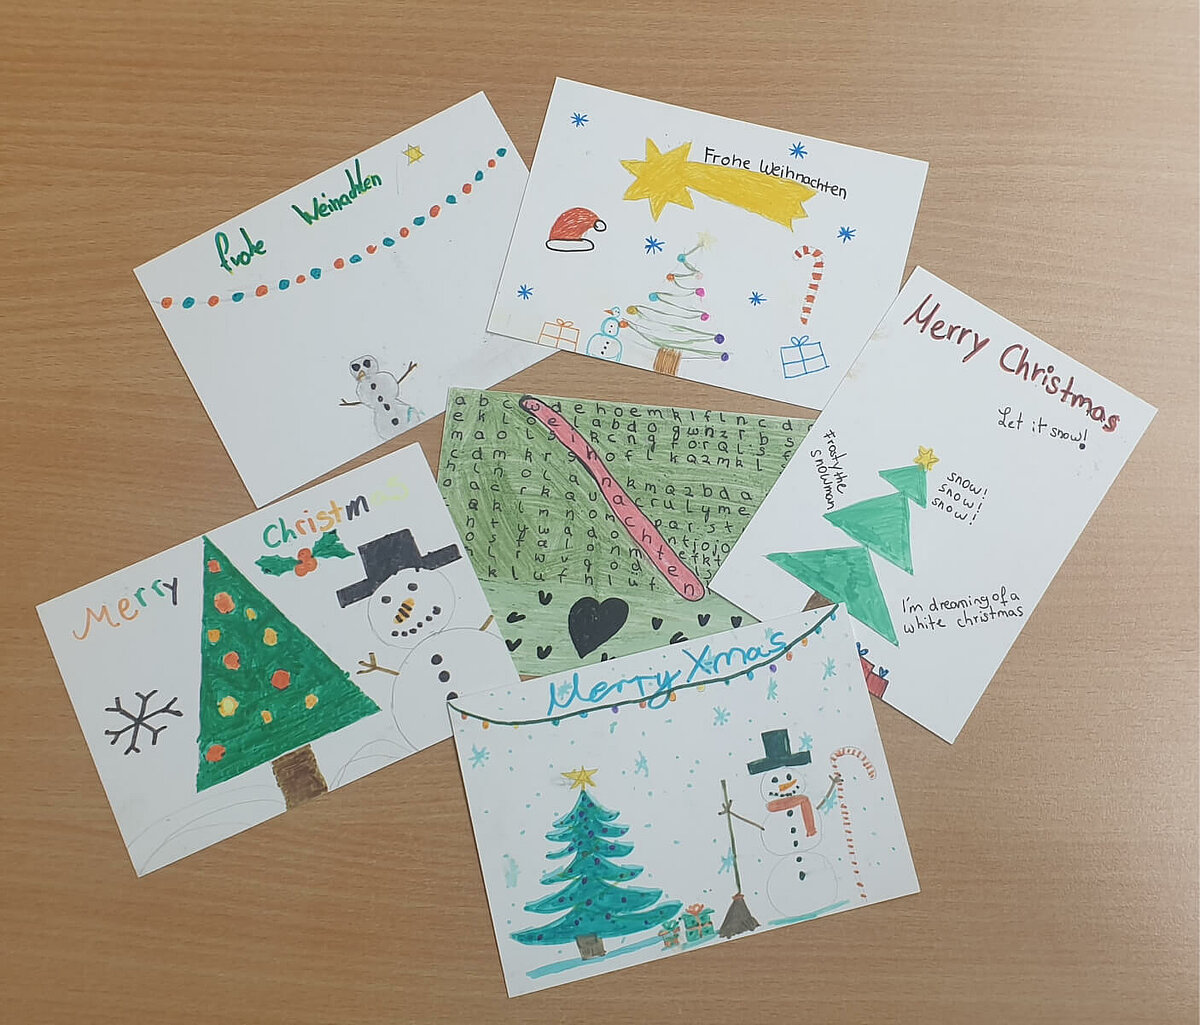 Selbst gebastelte Weihnachtskarten aus dem Projekt "Postkarten gegen Einsamkeit"